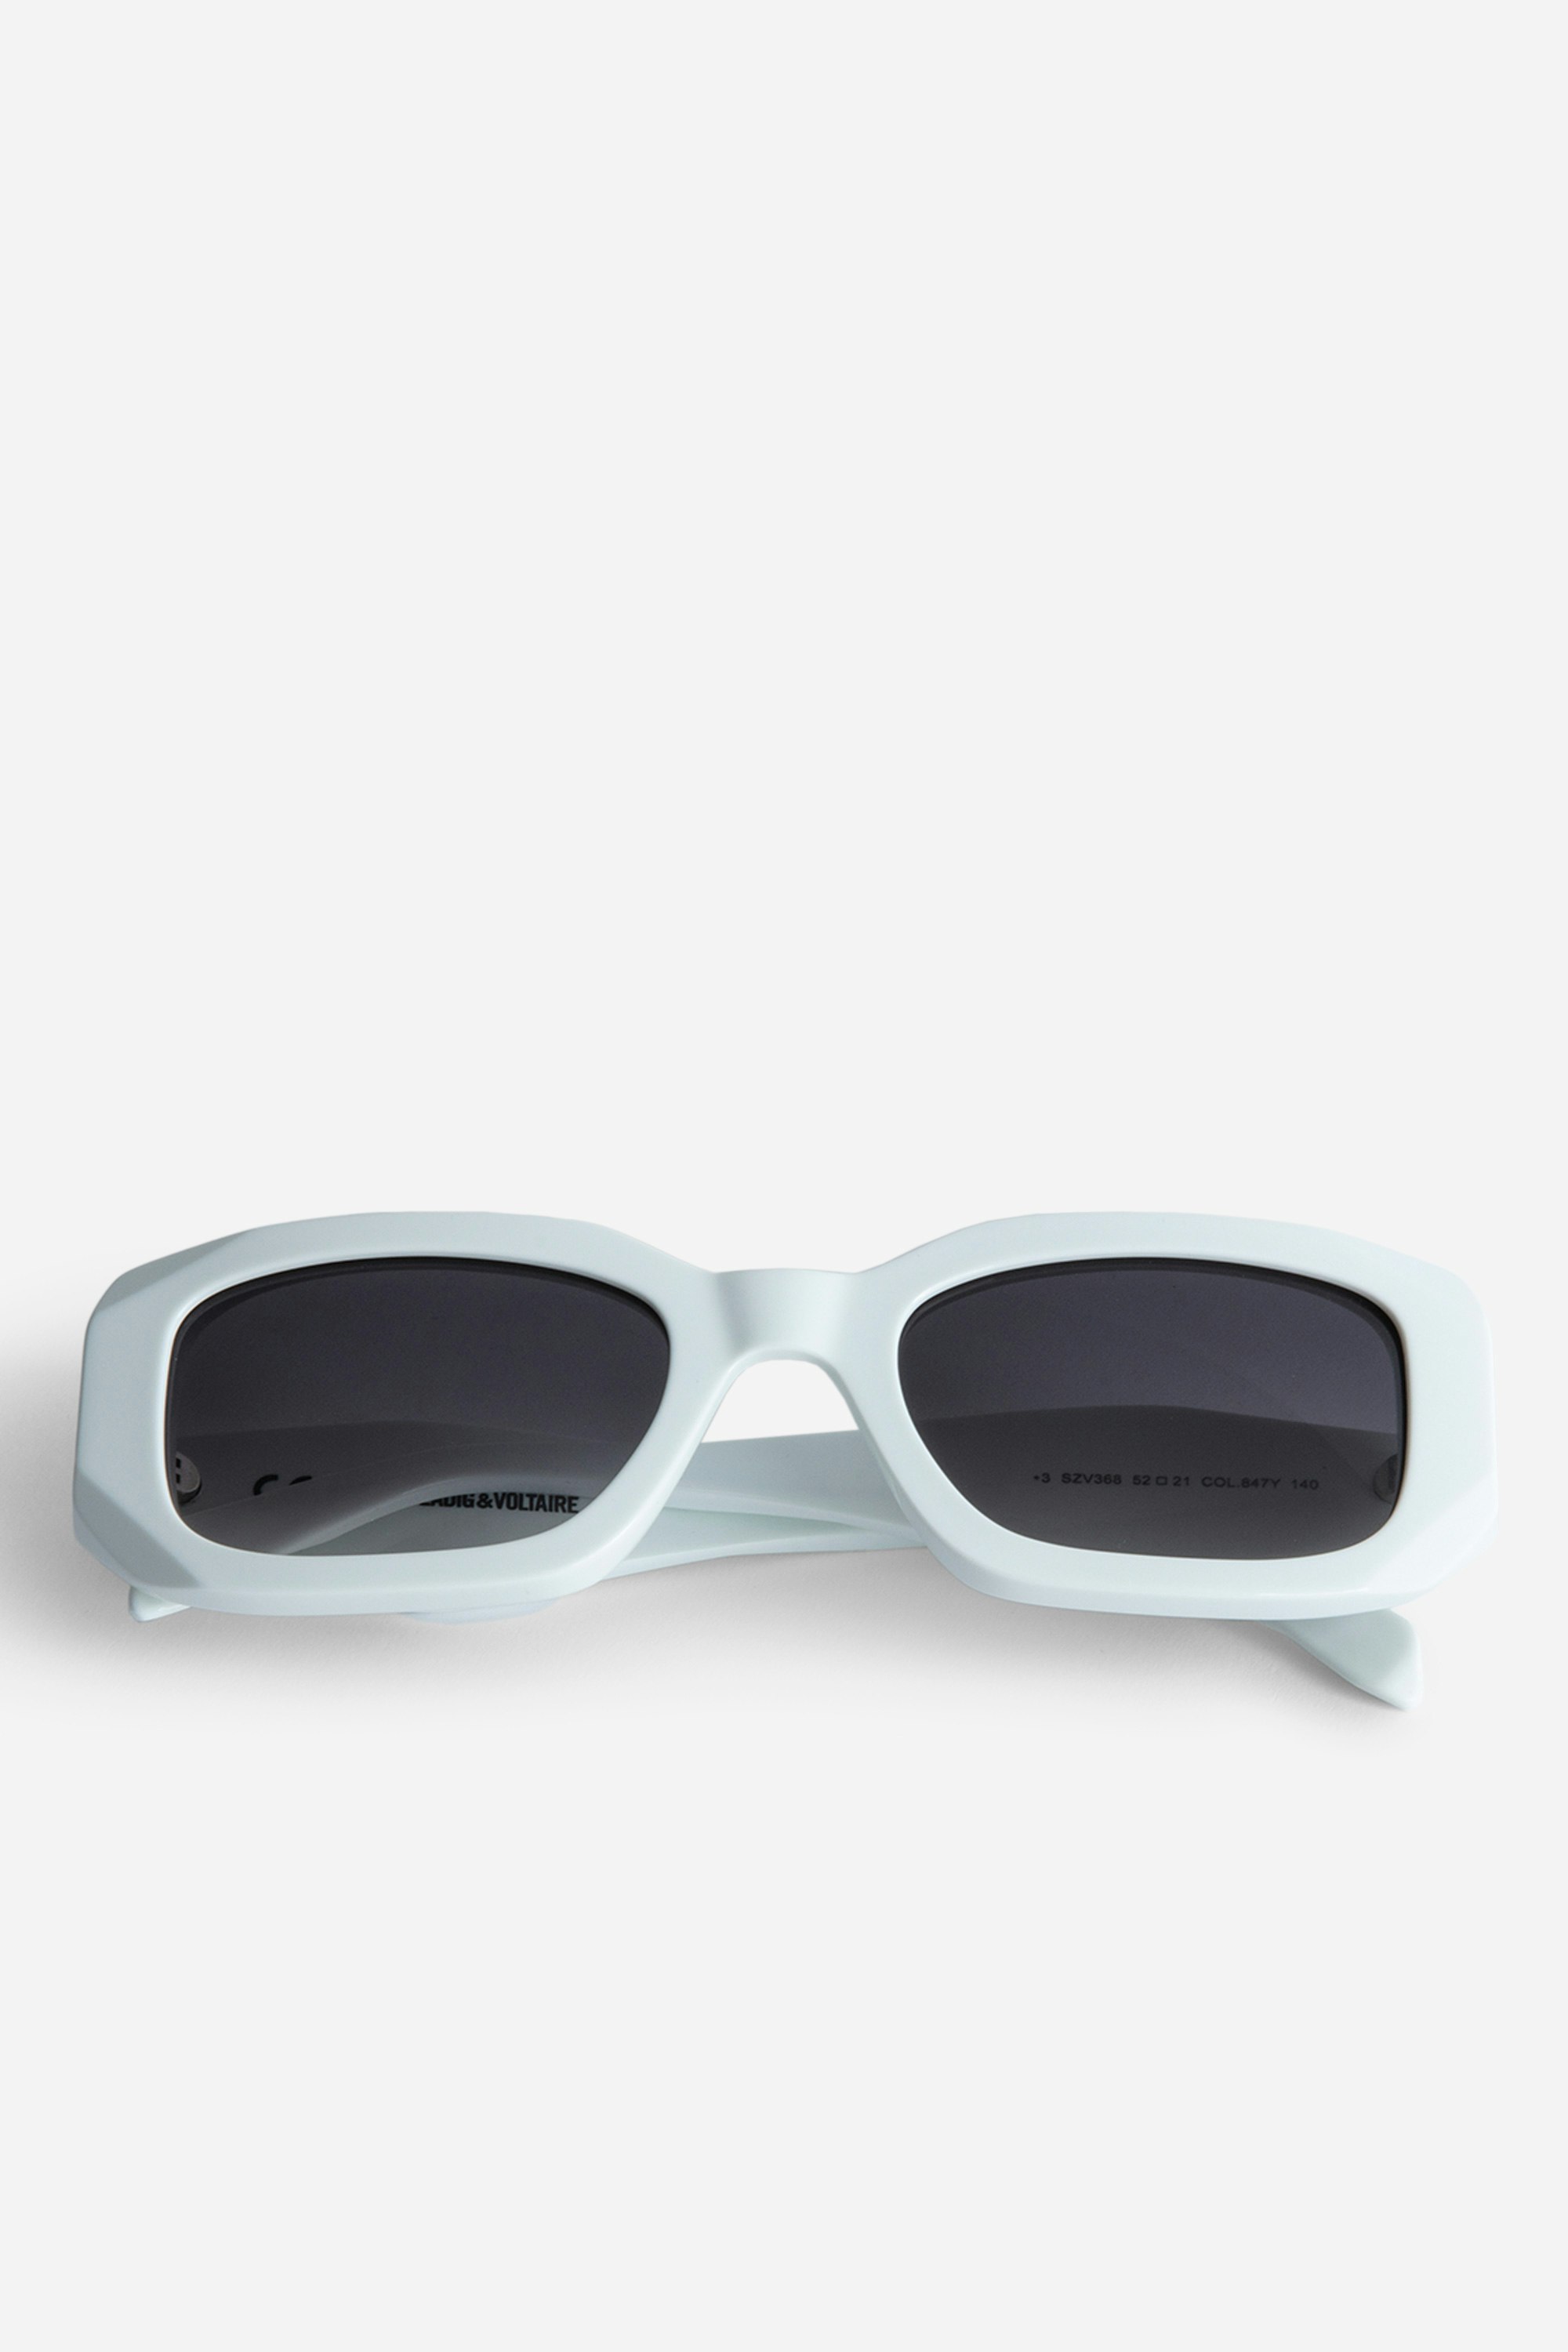 Gafas de sol ZV23H3 - Gafas de sol unisex rectangulares de color blanco con patillas desestructuradas con alas.